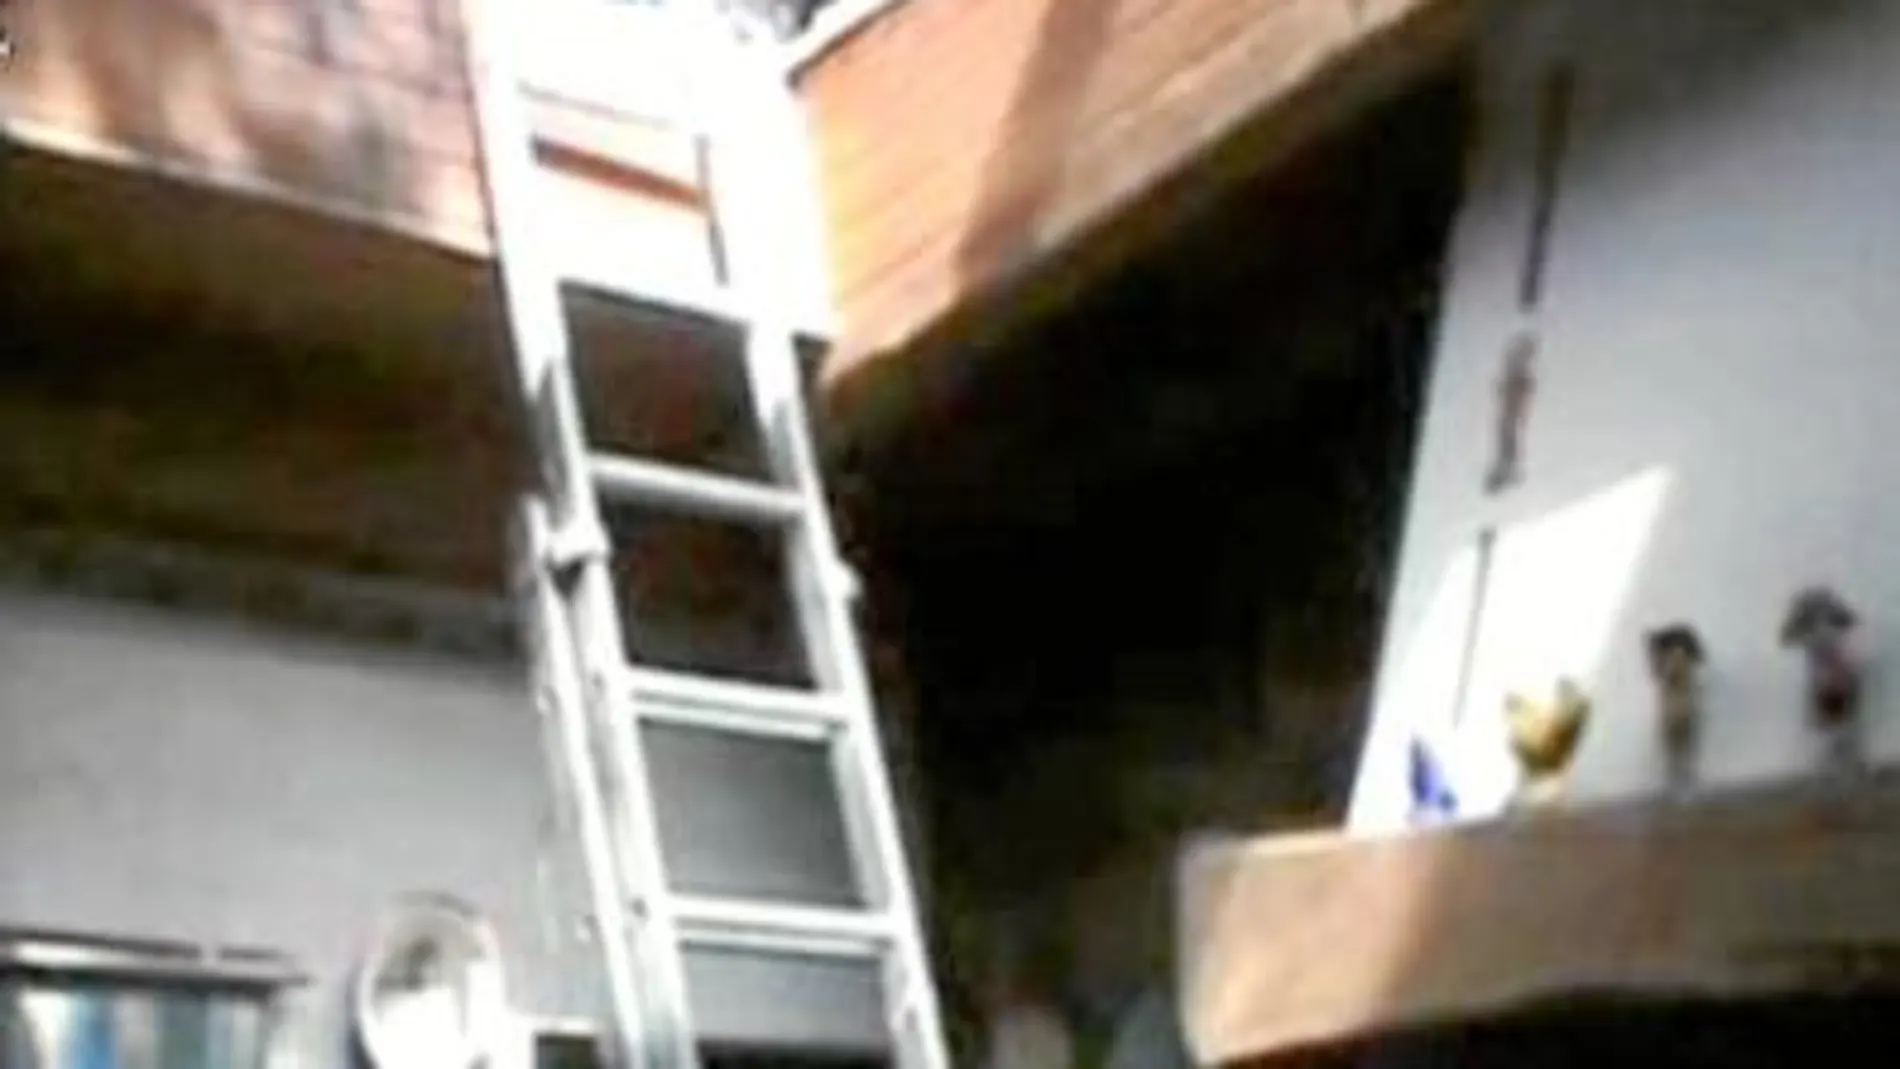 Los agentes tuvieron que acceder a su domicilio por el tragaluz del tejado. Se trataba de una vivienda enrejada y de complicado acceso